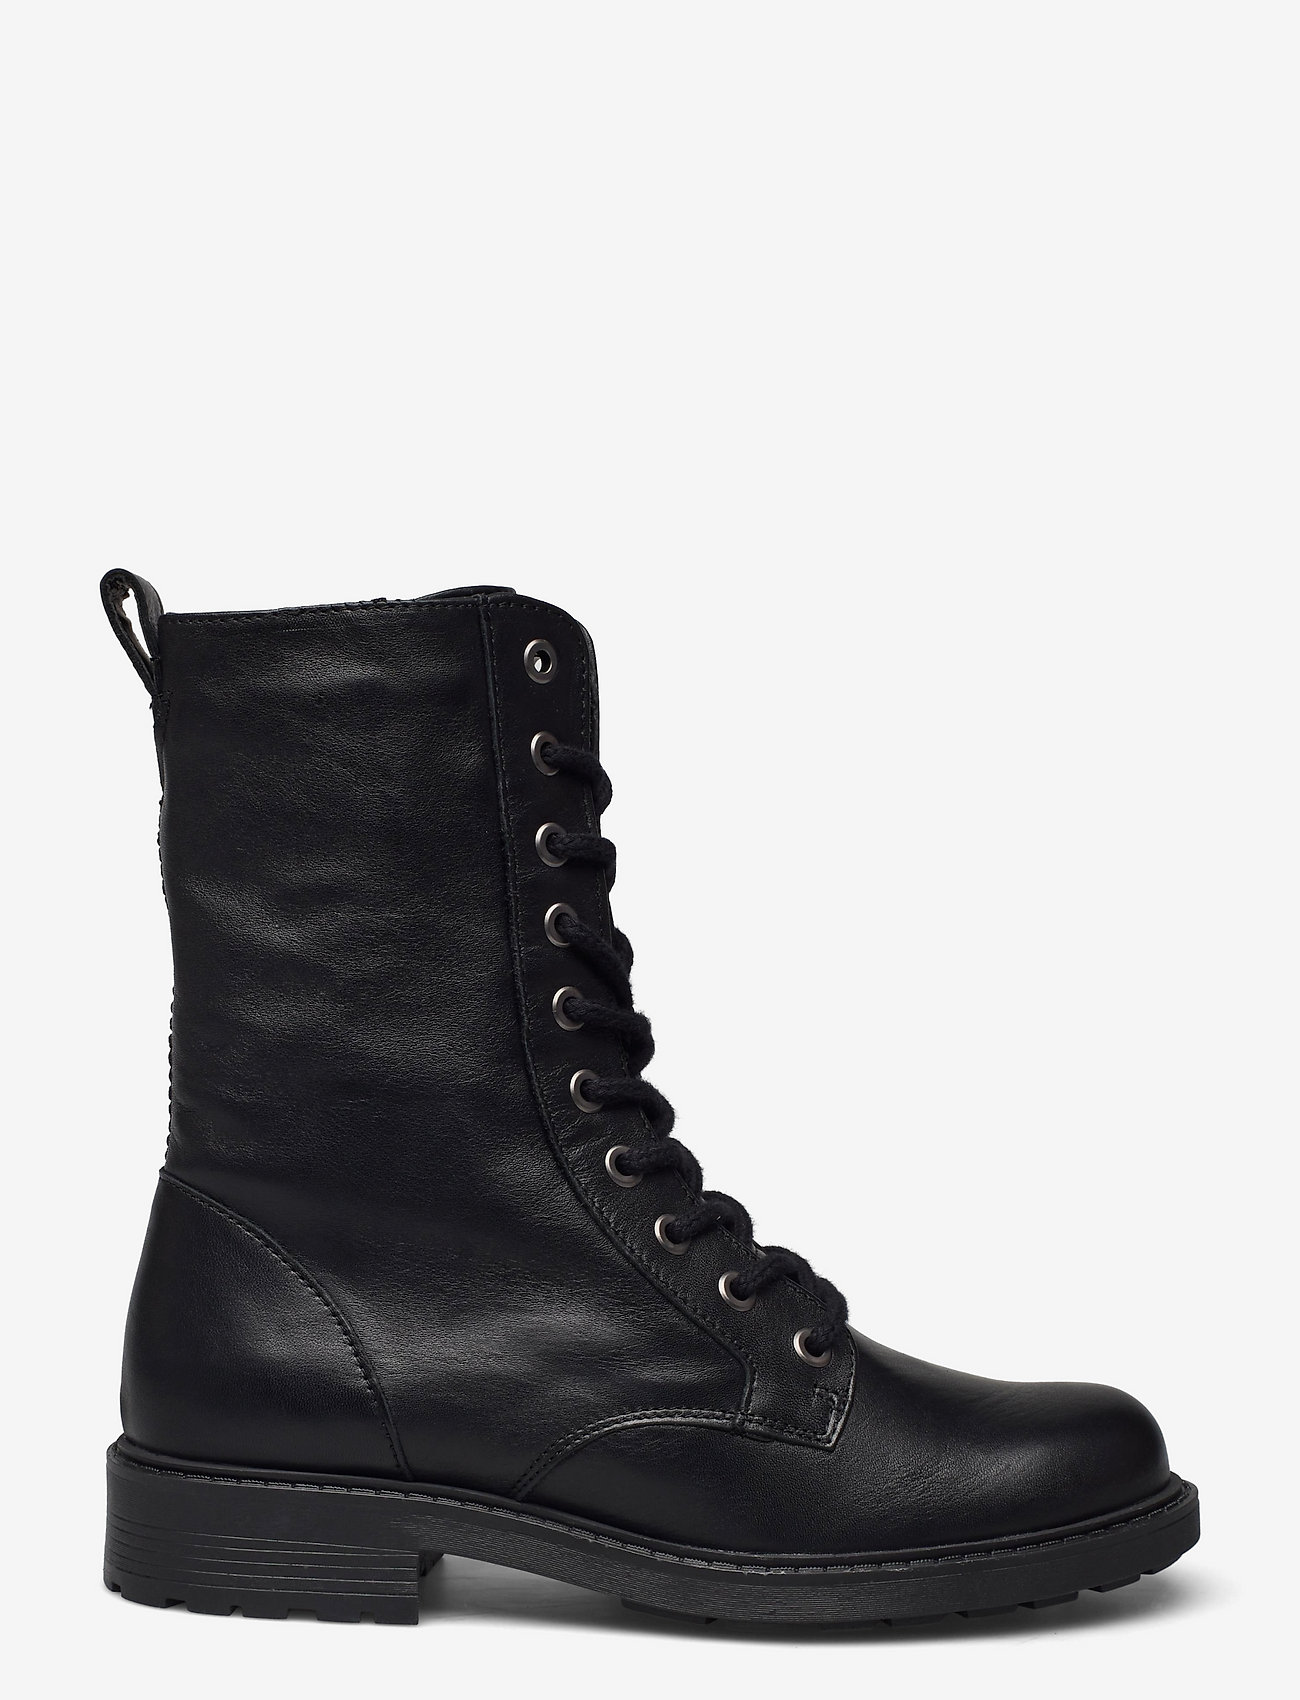 Clarks - Orinoco2 Style - kängor - black leather - 1